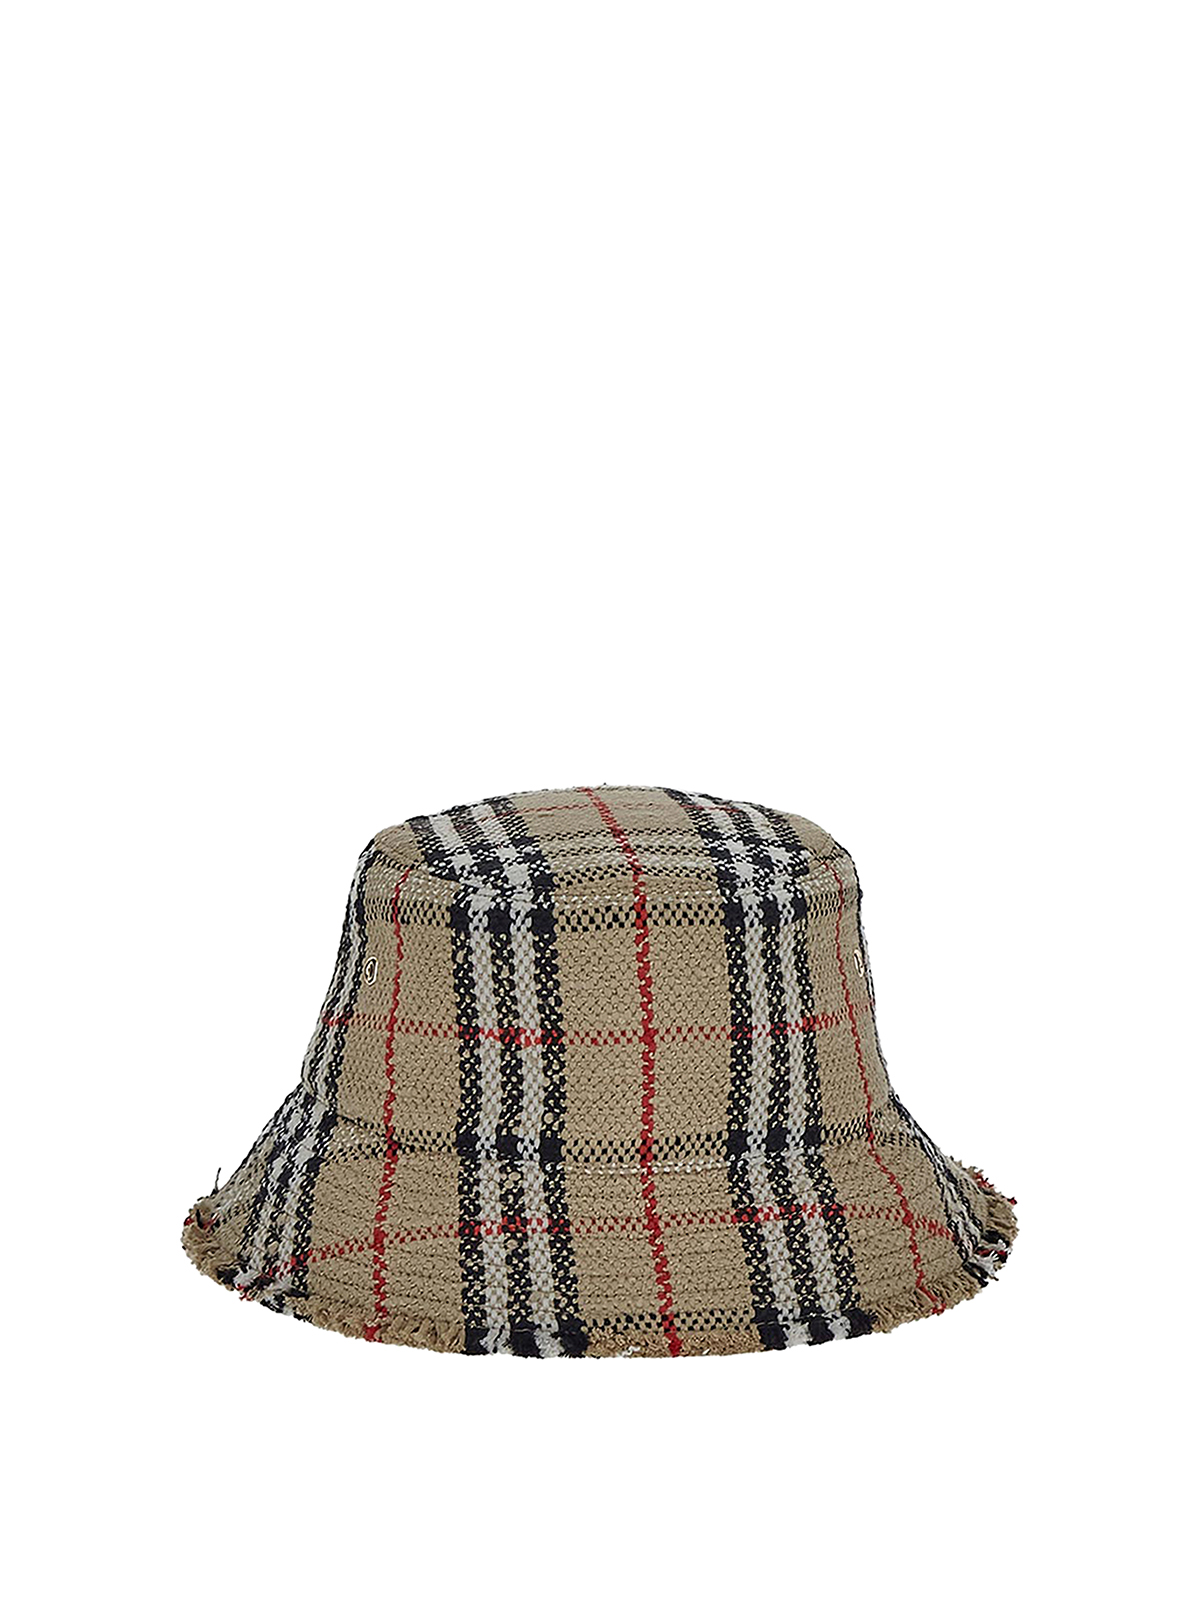 Burberry Bucket Hats for Women